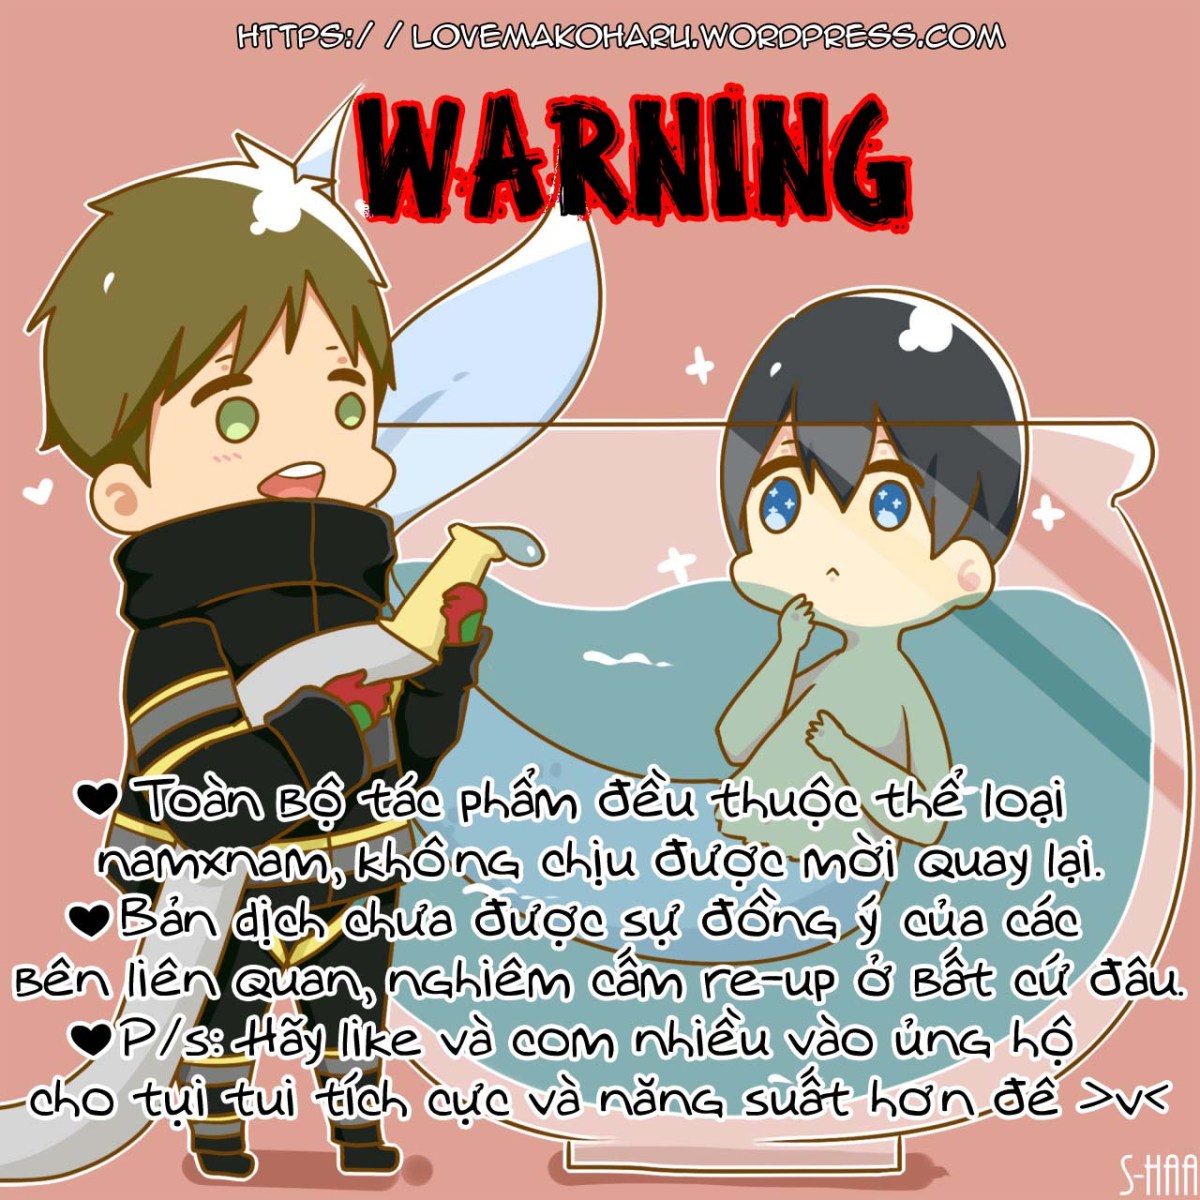 [!warning]